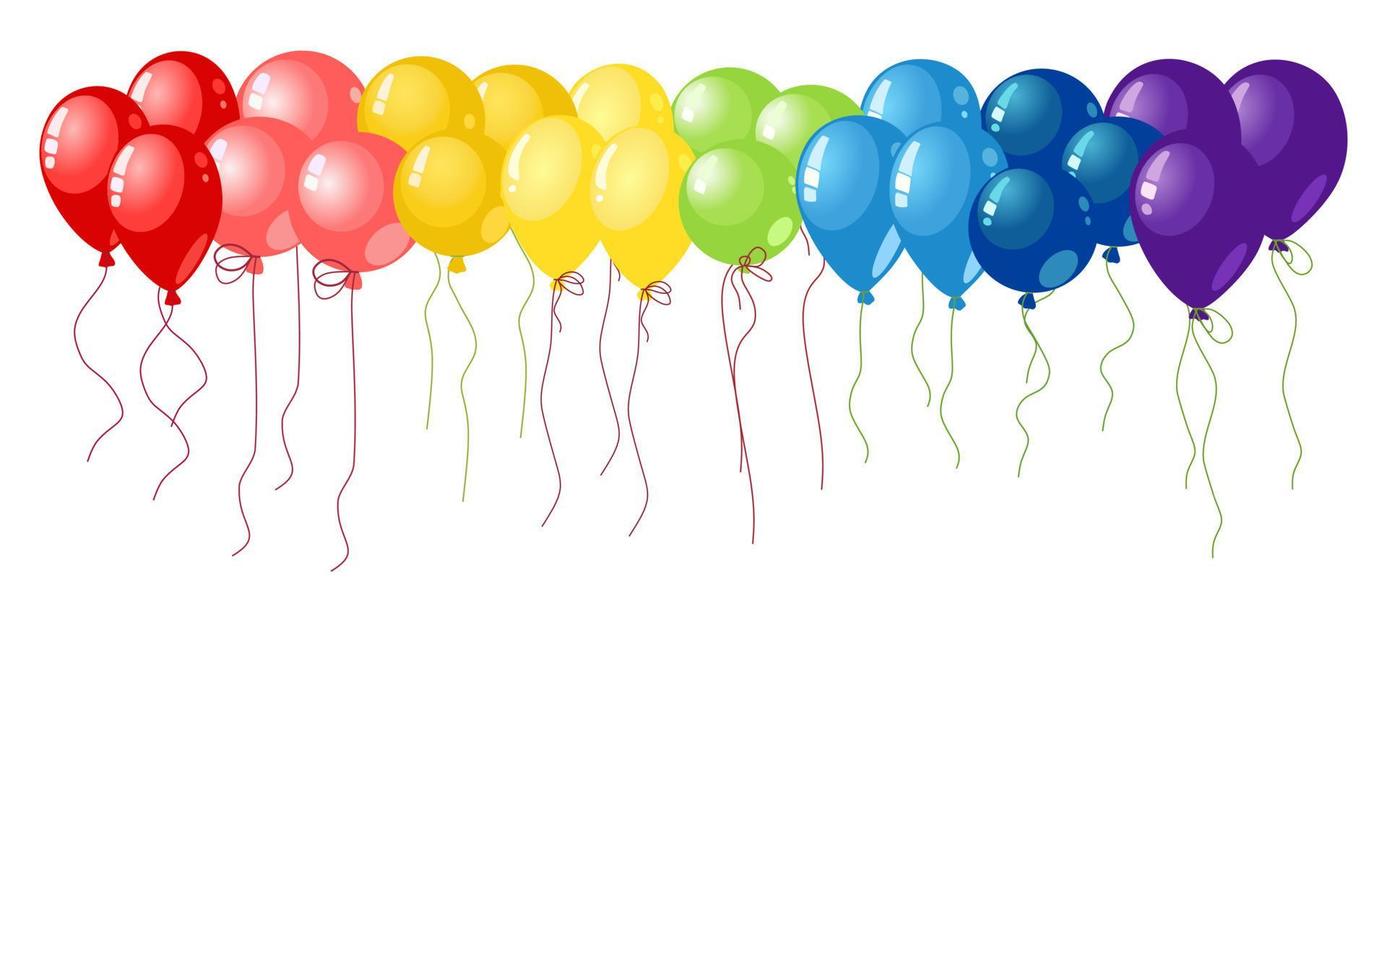 balões definir vetor vermelho, rosa, laranja, amarelo, verde, azul e violeta sobre fundo branco. cores do arco-íris.